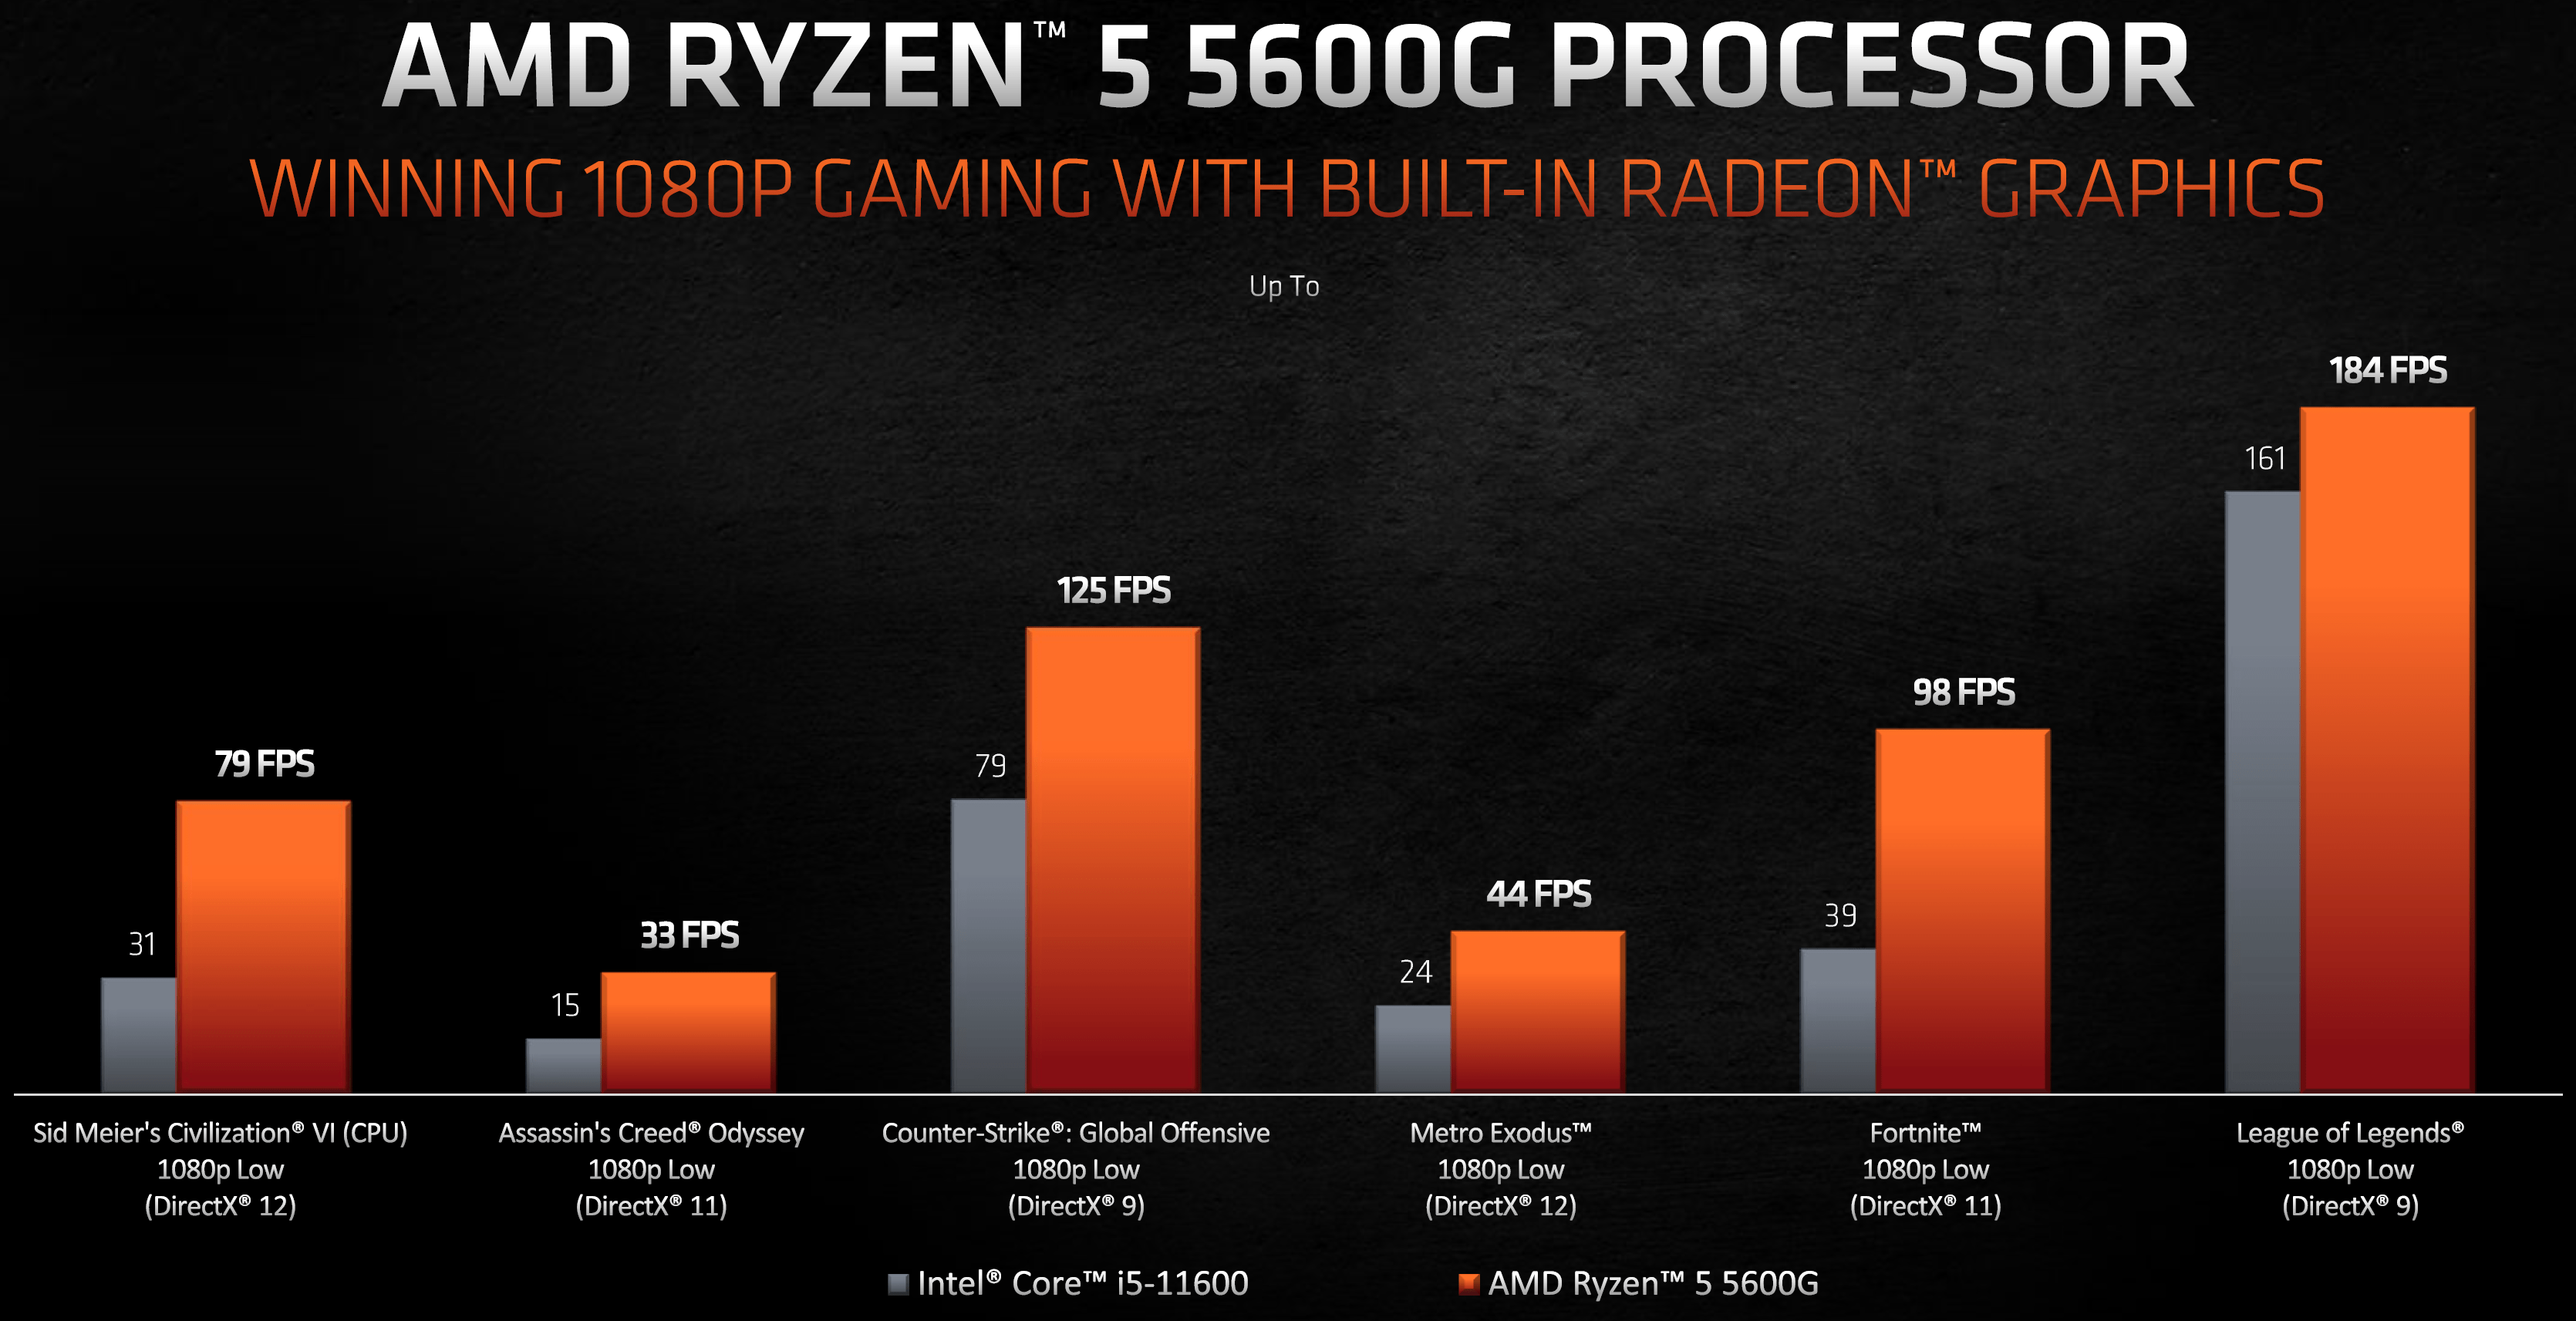 AMD Ryzen 5600G Gaming Bench